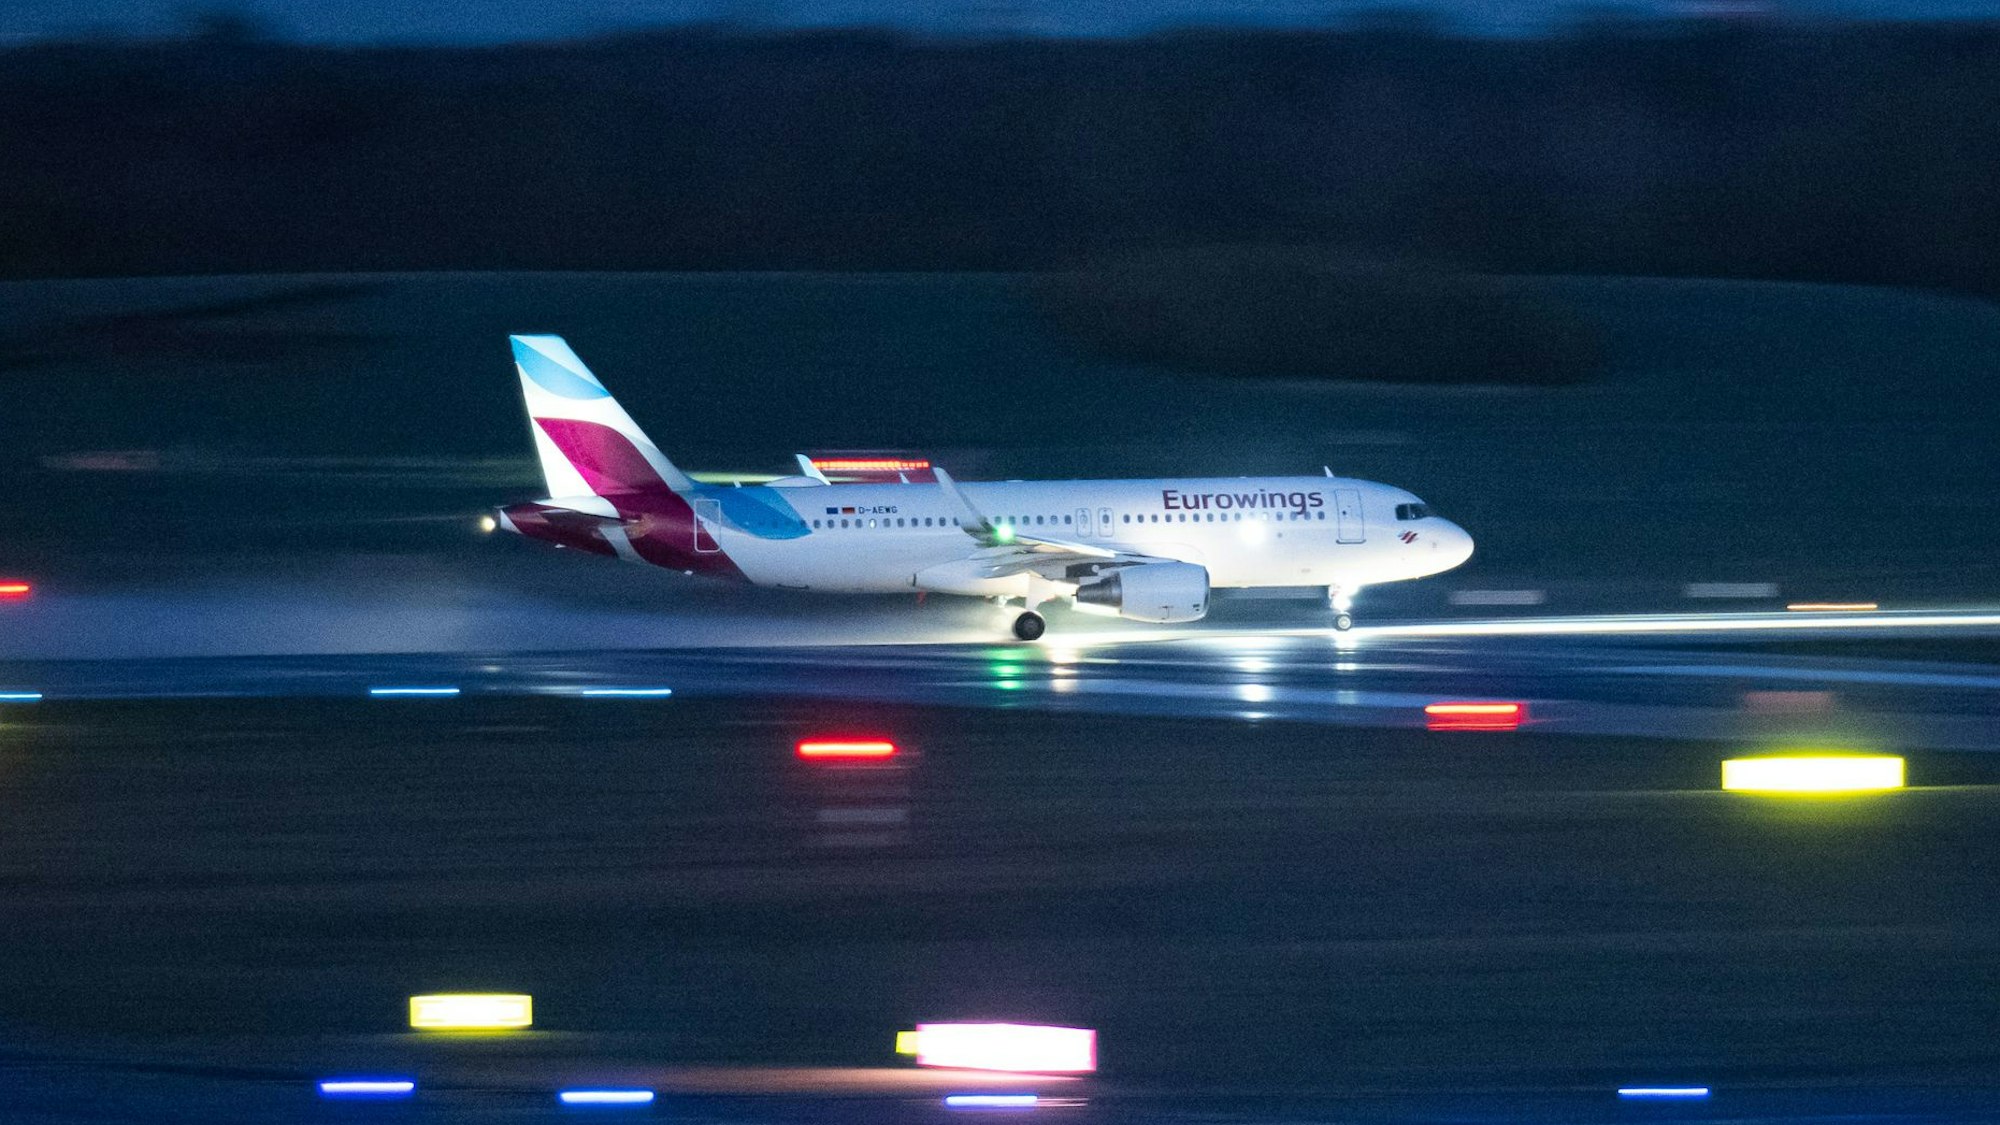 Ein Airbus A320 der deutschen Fluggesellschaft Eurowings beim Start in der Nacht am Flughafen Hamburg. (Symbolbild)